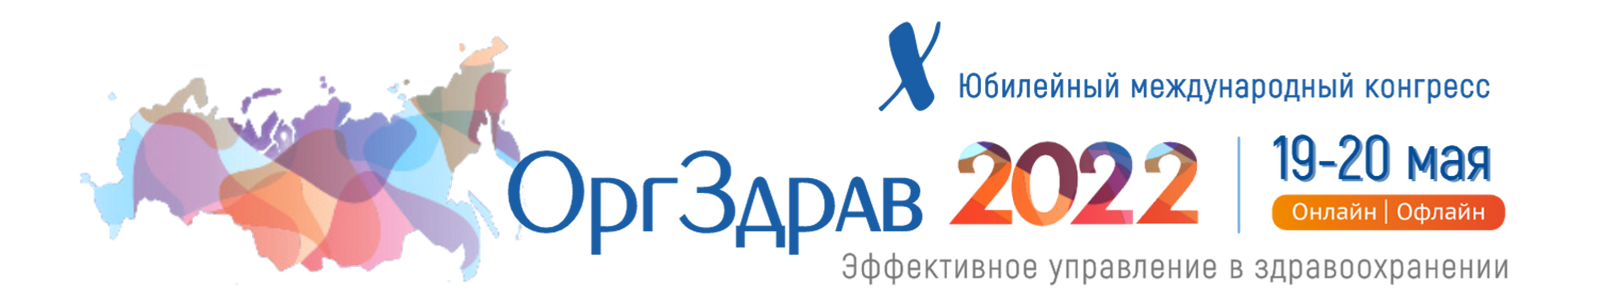 Баннер Оргздрав-2022 1600x300